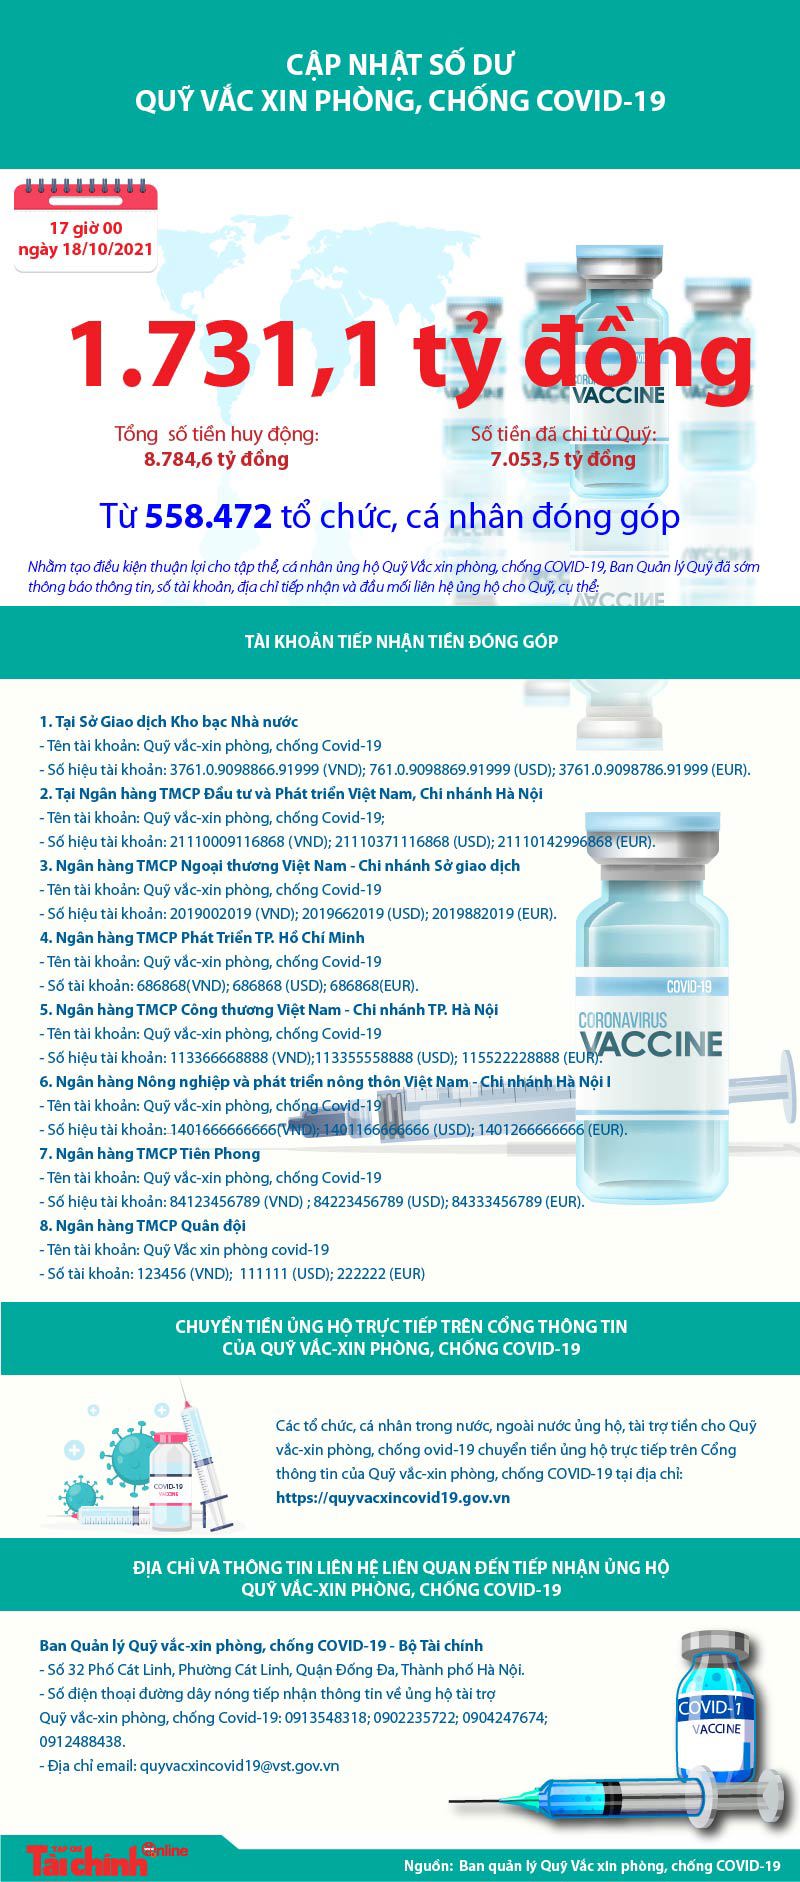 [Infographics] Quỹ Vắc xin phòng, chống COVID-19 còn dư 1.731,1 tỷ đồng - Ảnh 1